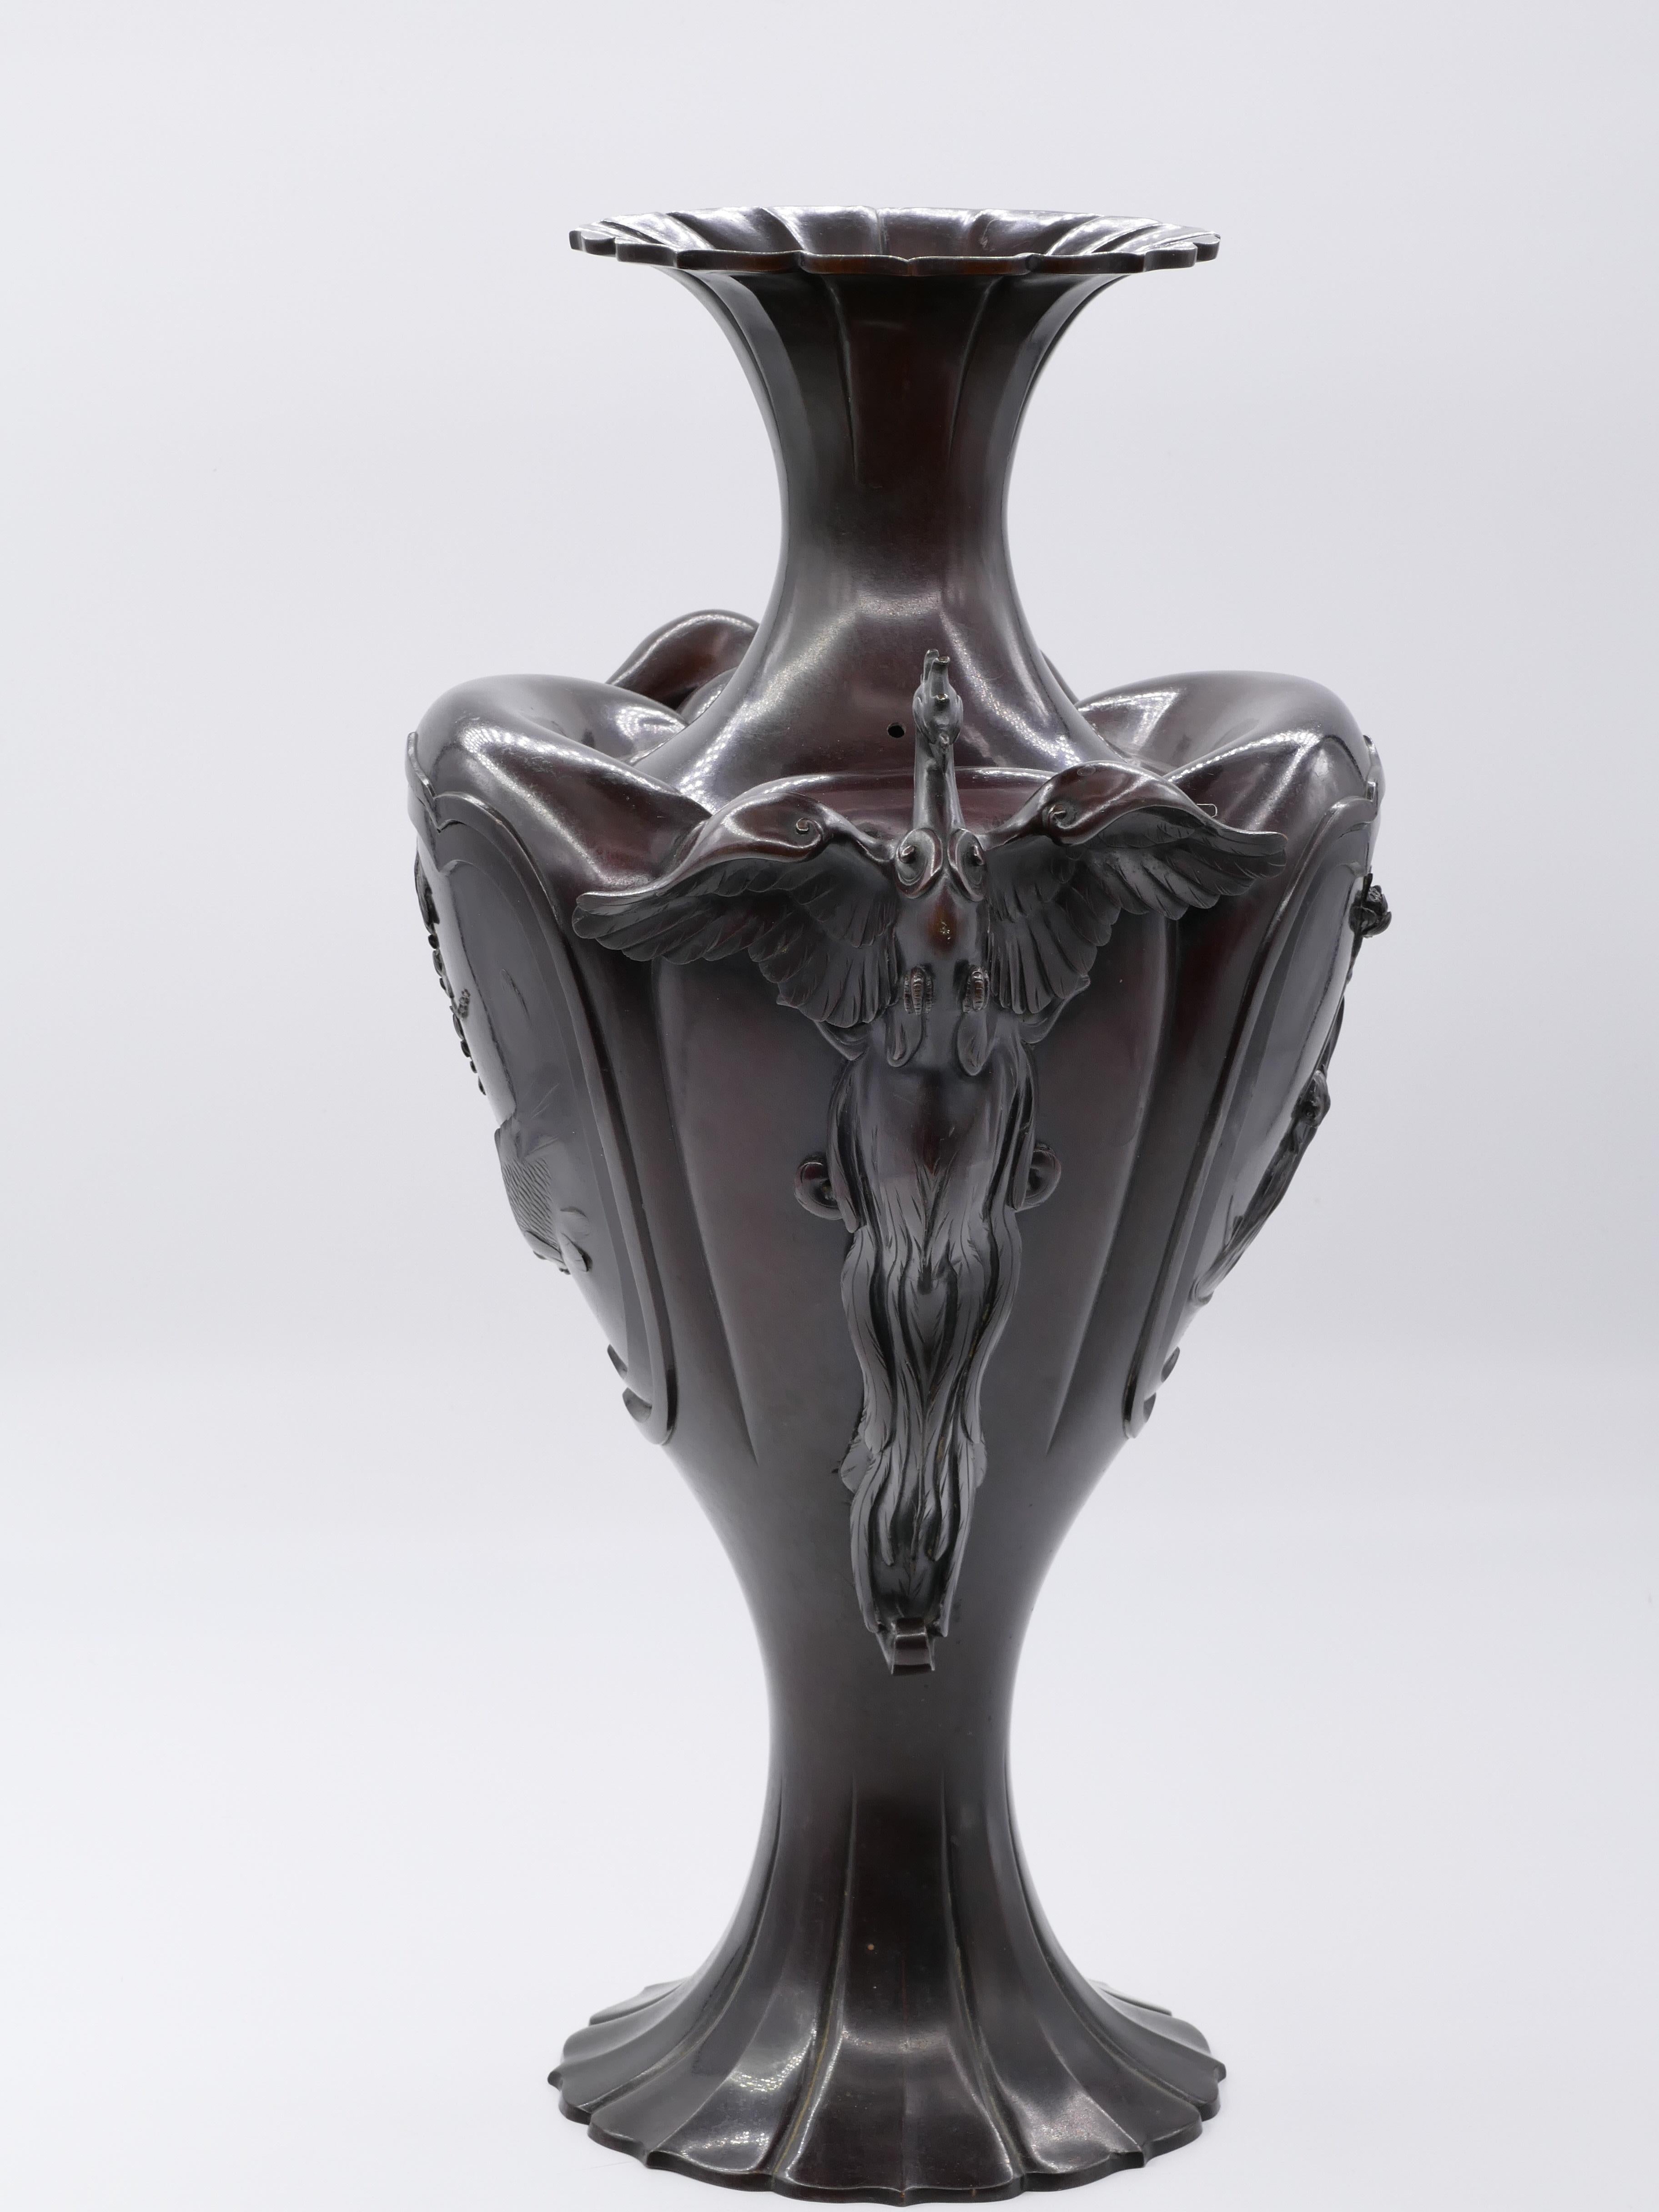 Cette amphore en bronze de Meji est un superbe vase en bronze décoré d'une représentation de fleurs et de grenouilles et, sur les côtés, d'un phénix. Vase japonais de la période Meji (1868-1912).

En excellent état, à l'exception d'un trou percé